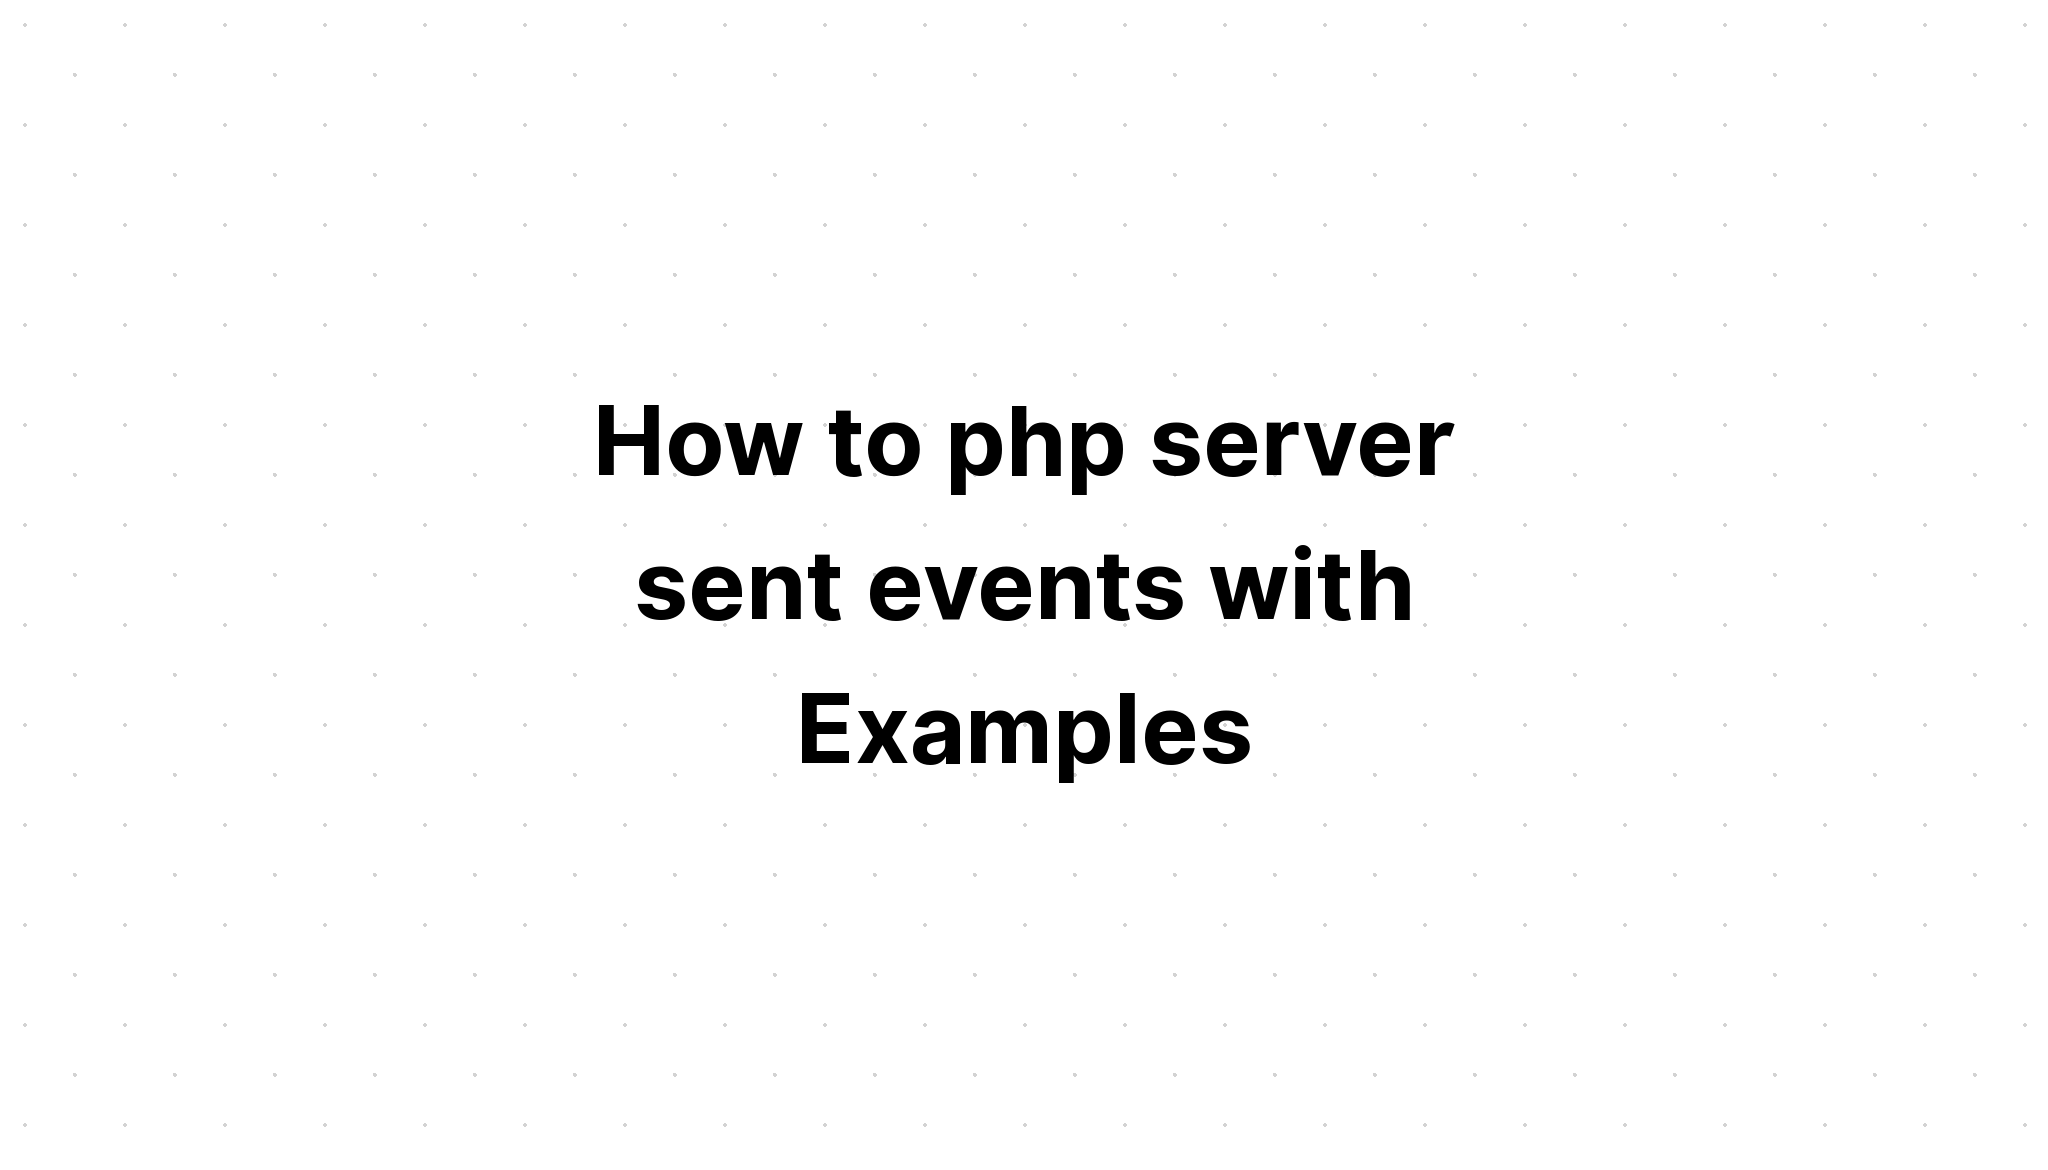 Cara server php mengirim acara dengan Contoh